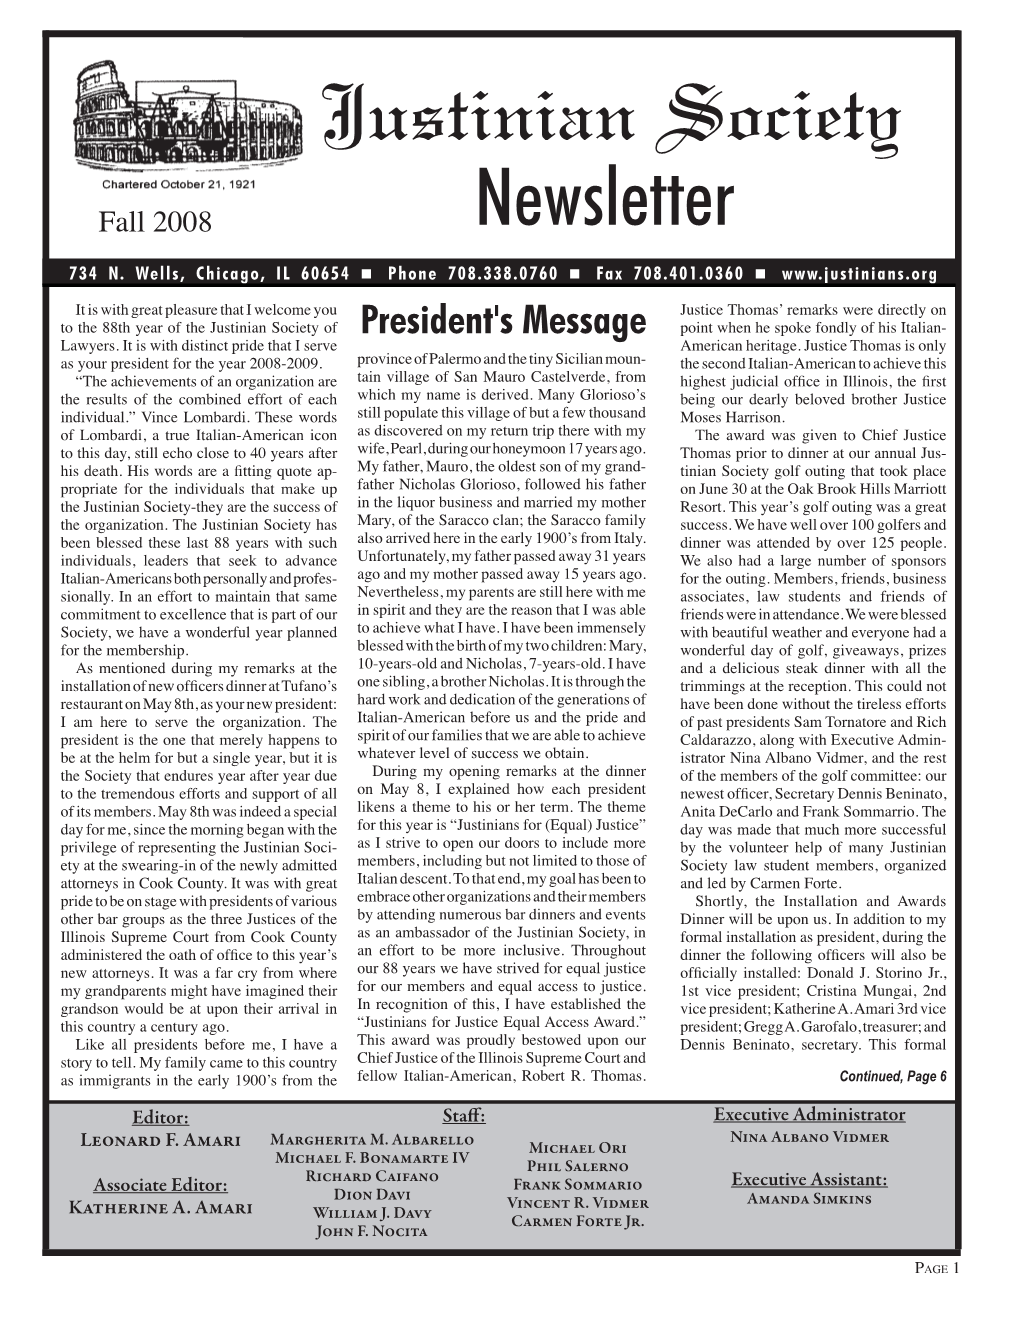 Fall 2008 Newsletter